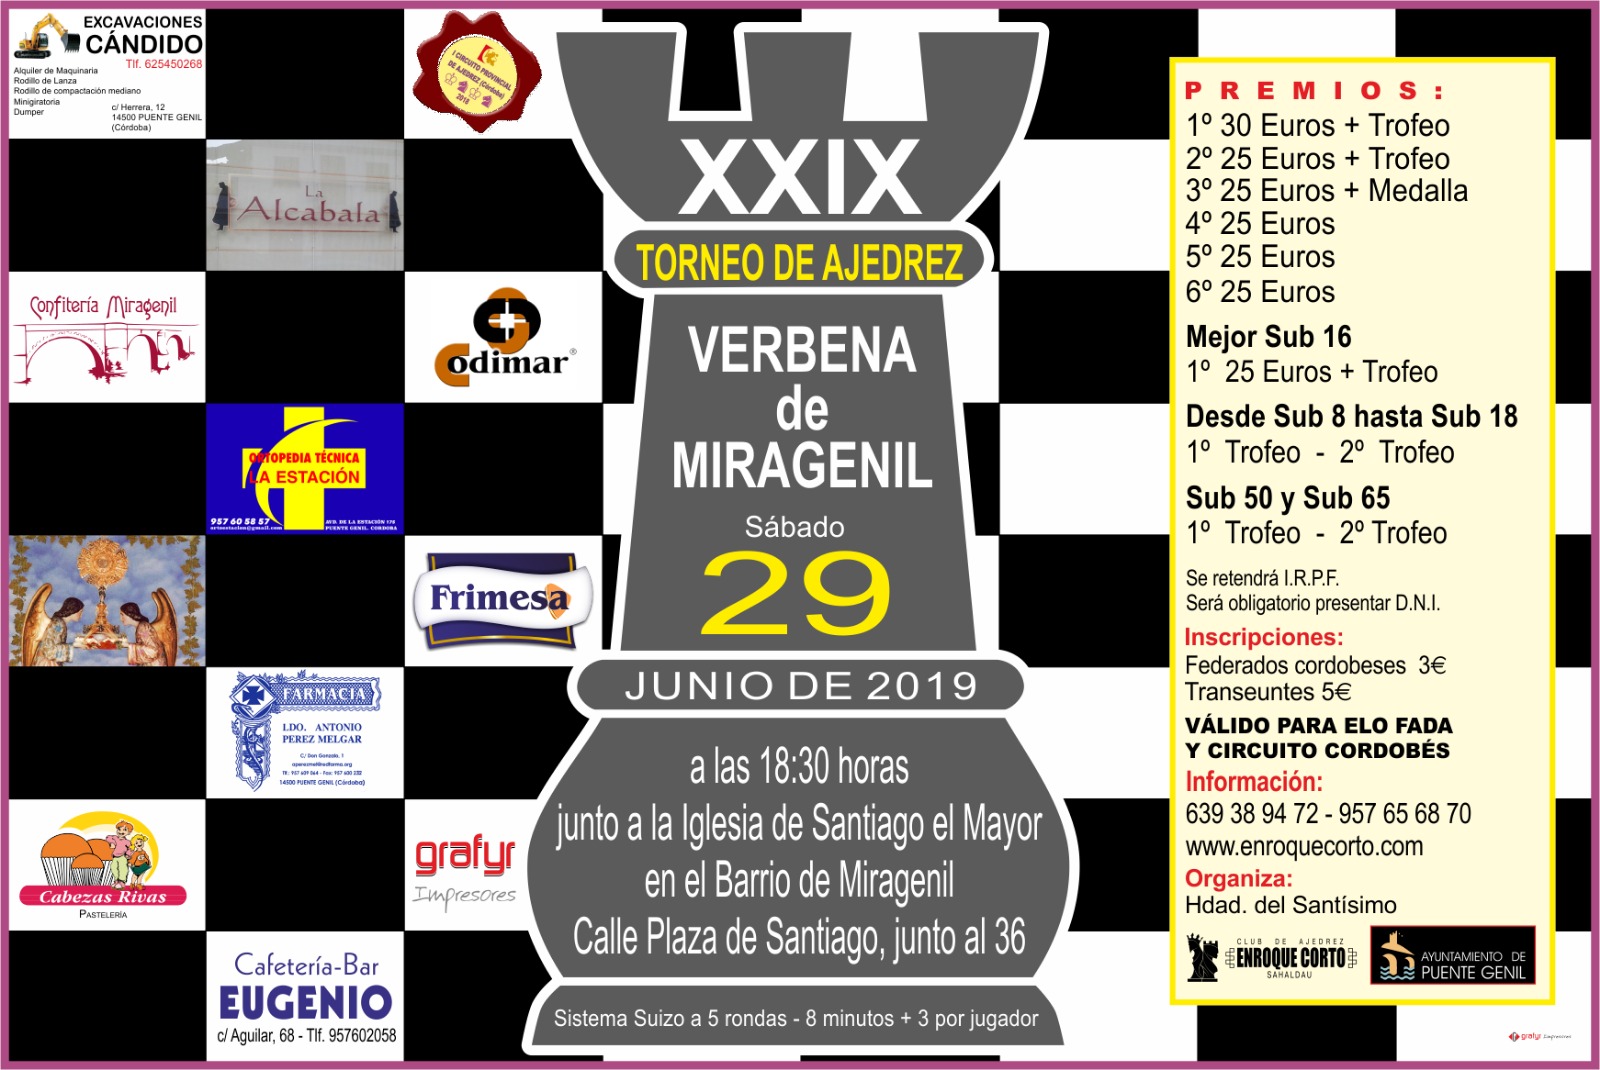 Torneo Ajedrez Verbena Miragenil Puente Genil 2019